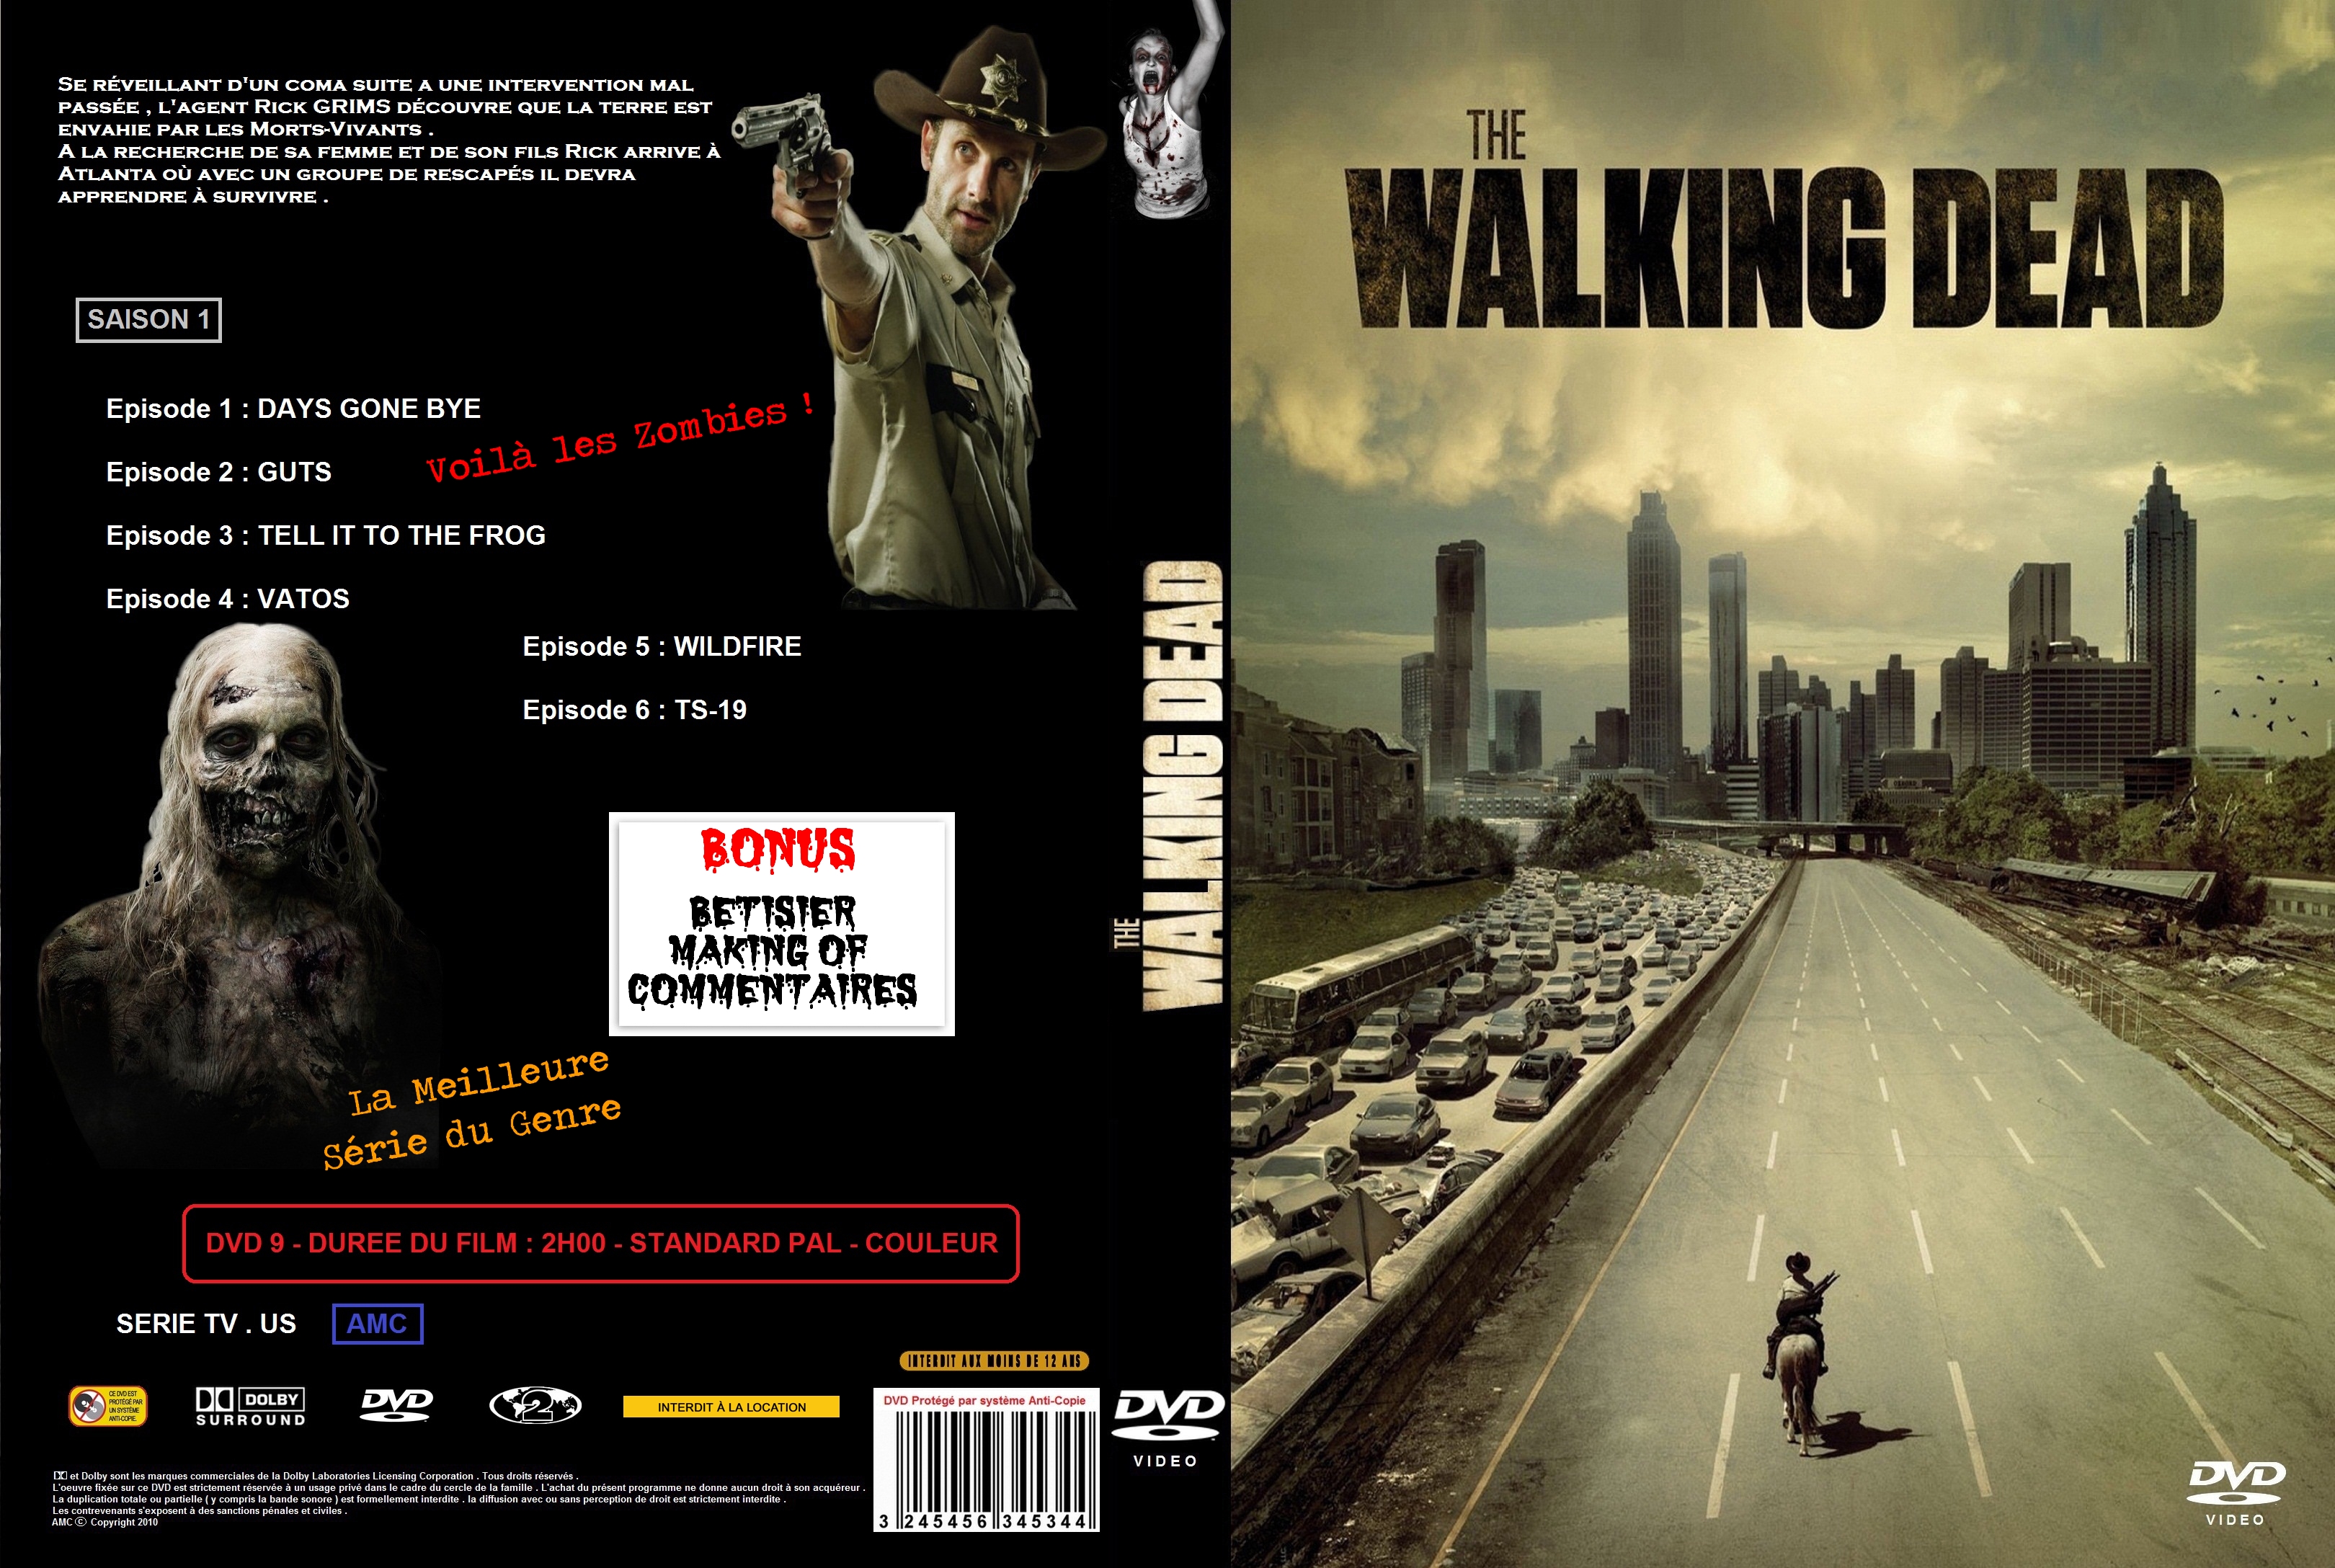 Jaquette DVD The Walking Dead Saison 1 custom v2